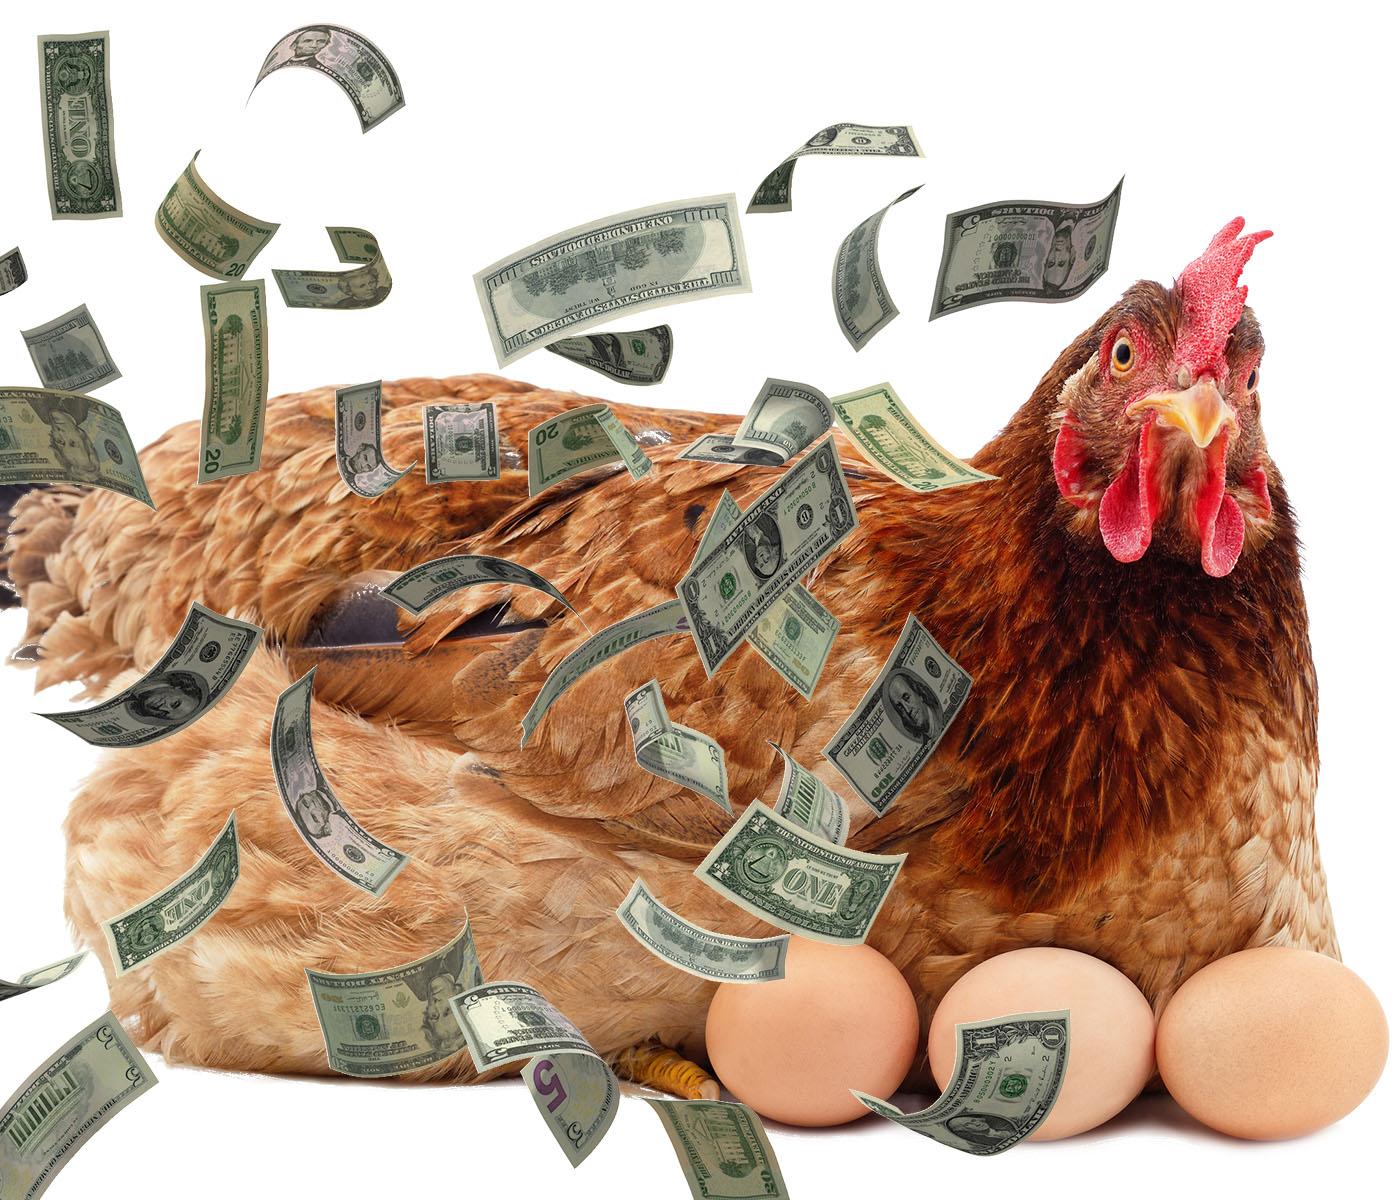 Nuevo postbiótico genera retorno económico en gallinas ponedoras